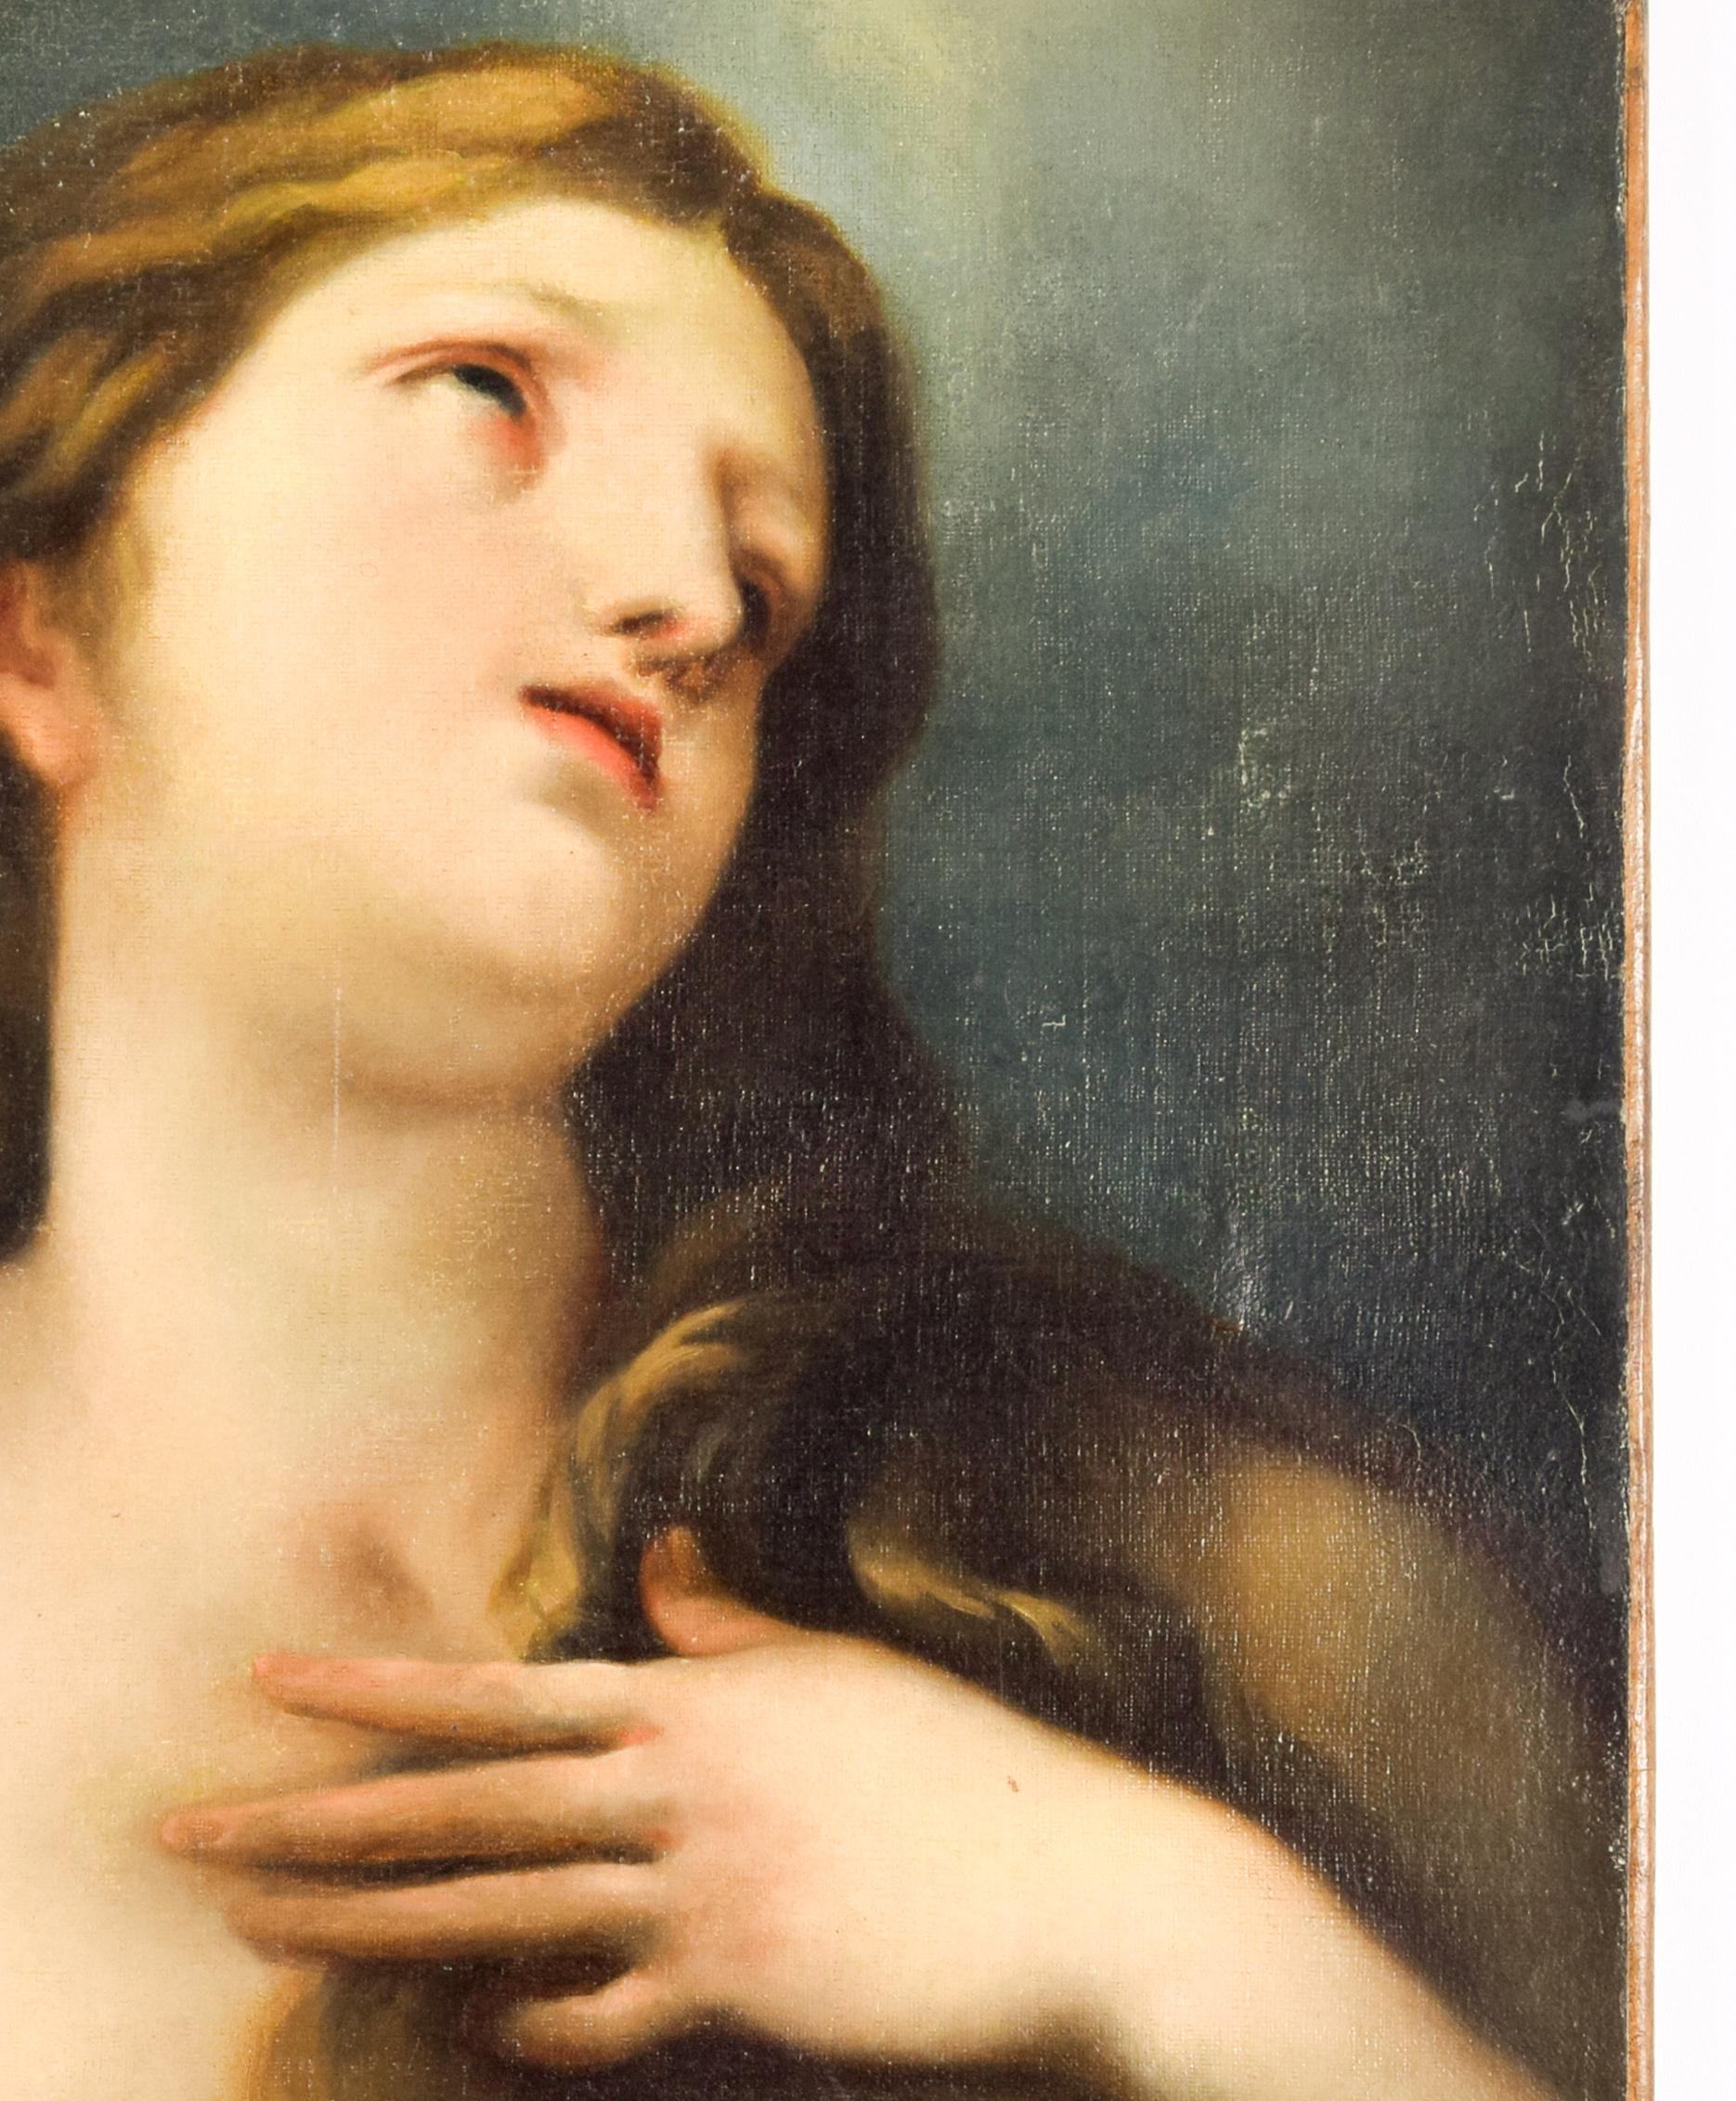 Mary Magdalene – Öl auf Leinwand von der italienischen Schule des 19. Jahrhunderts. – Painting von Unknown